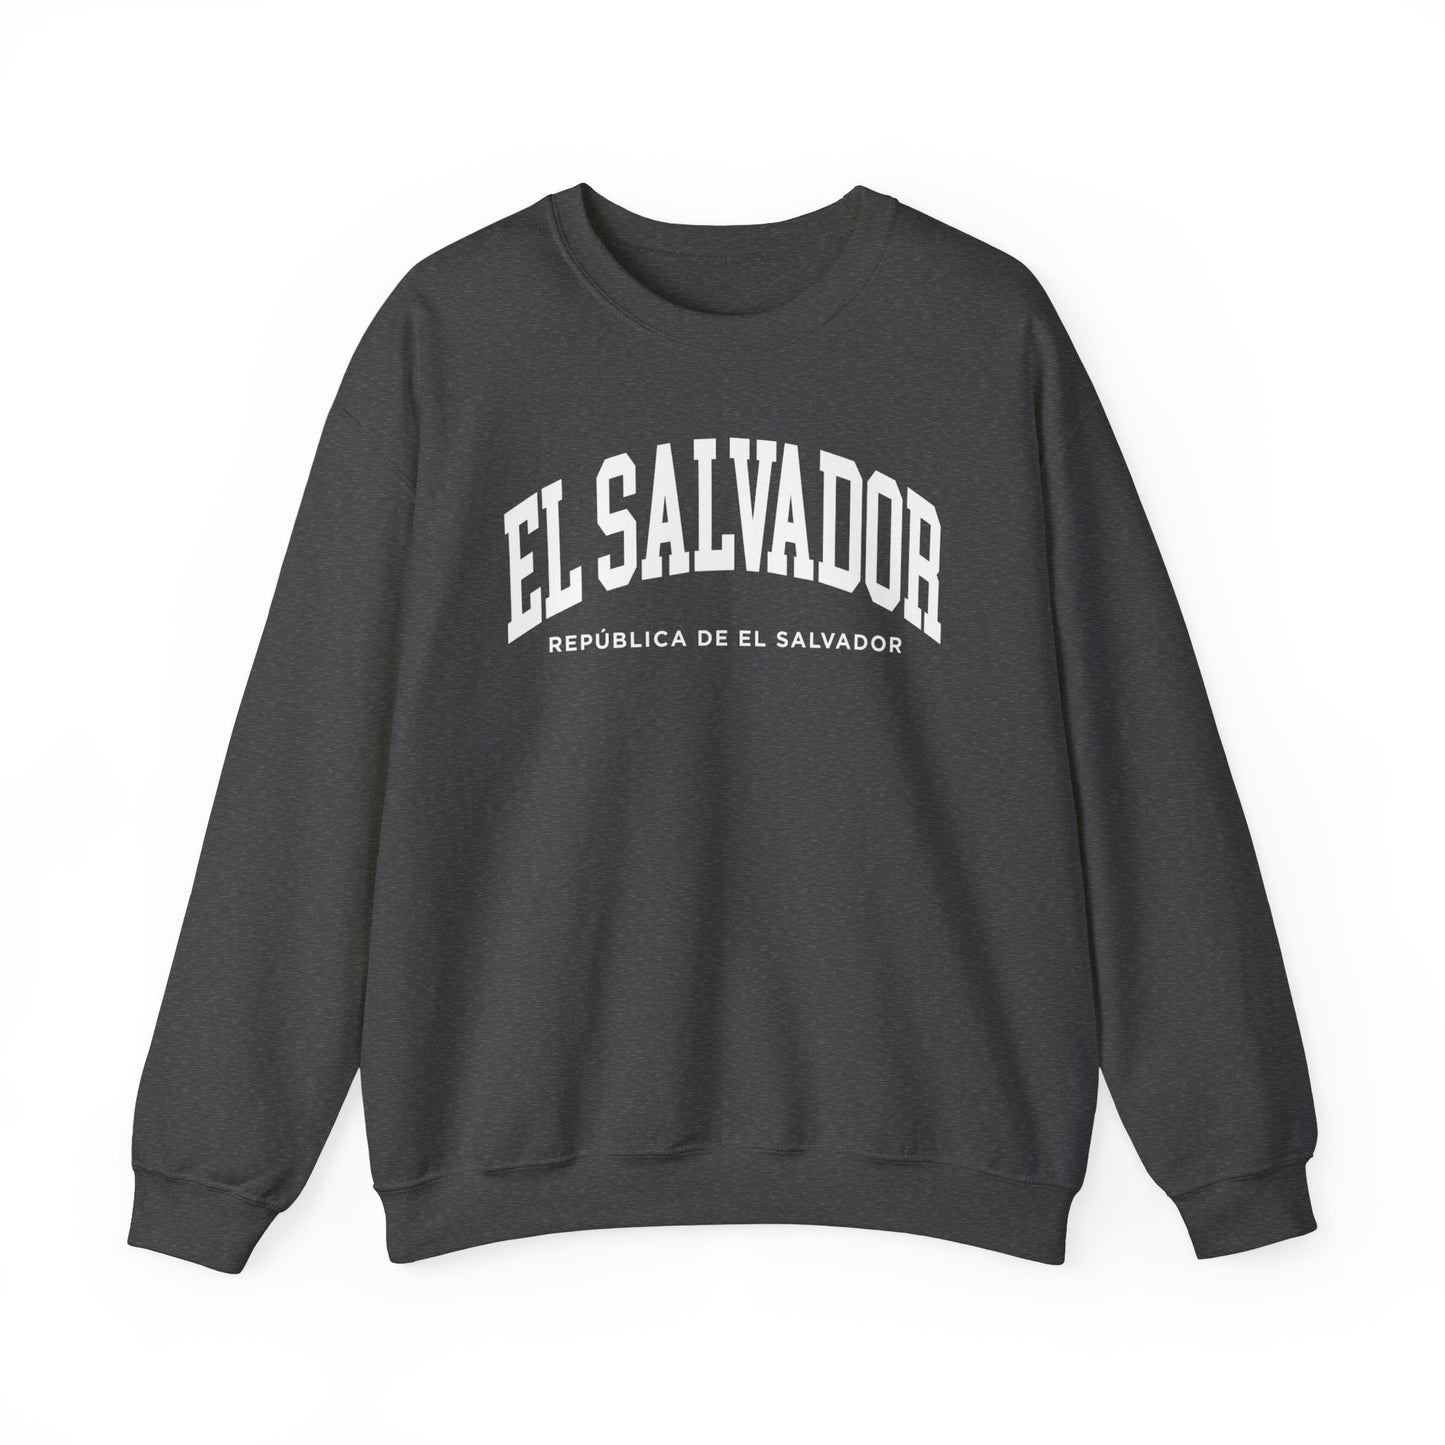 El Salvador Sweatshirt